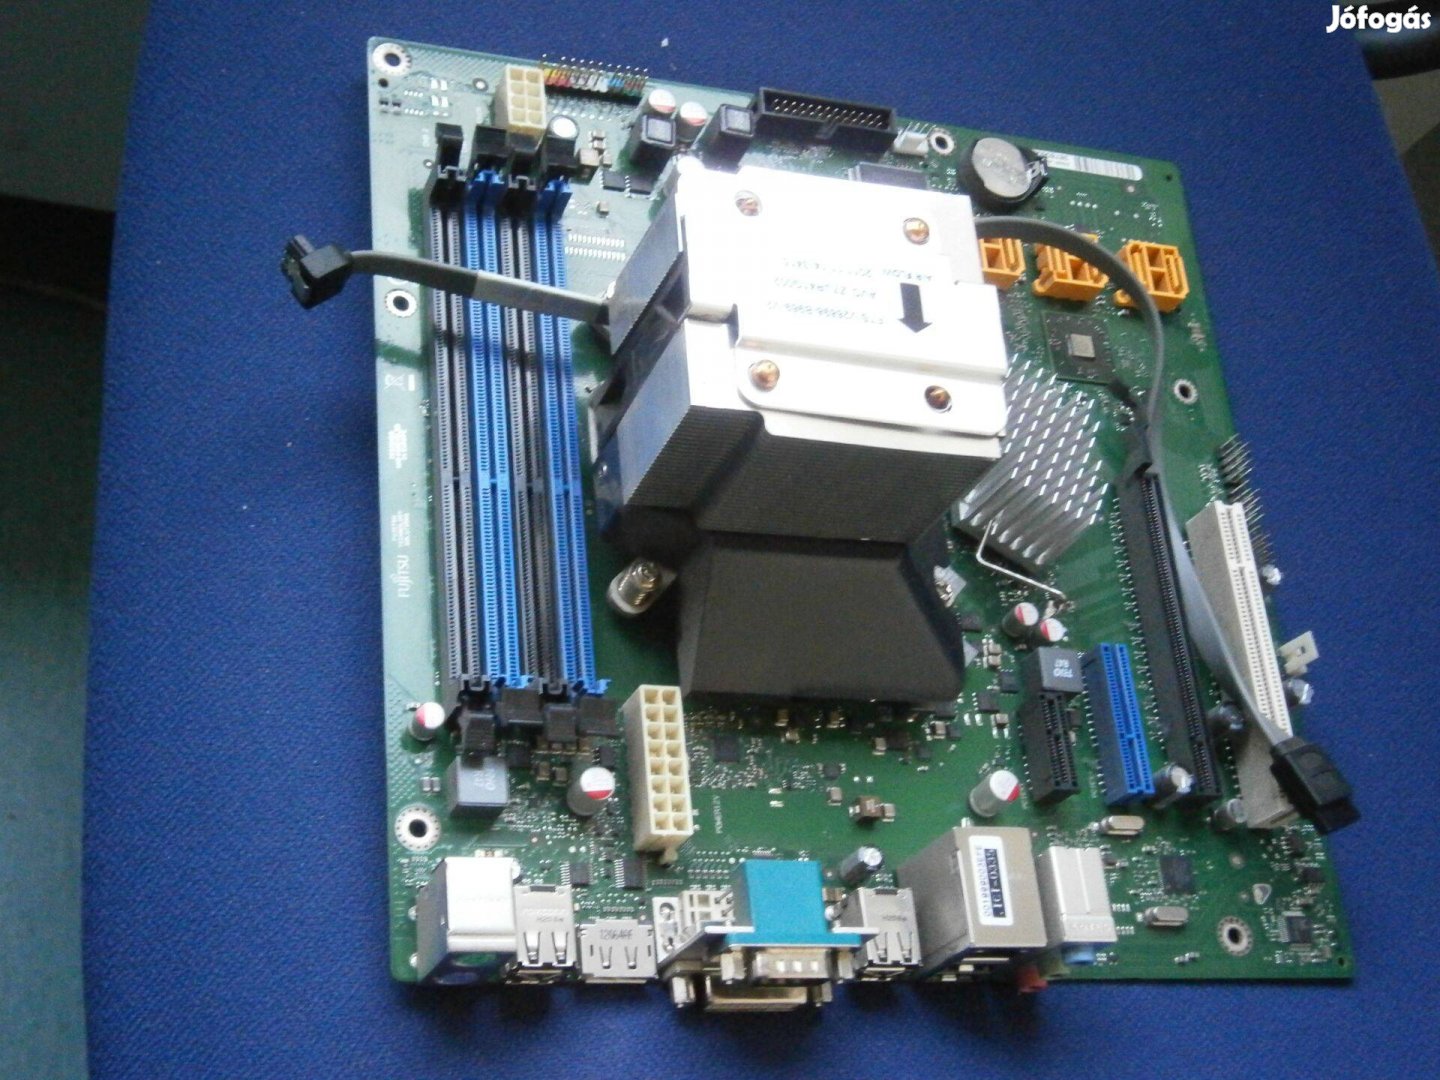 Eladó Fujitsu Siemens alaplap w26361-w1812-x-02 alaplap processzorral